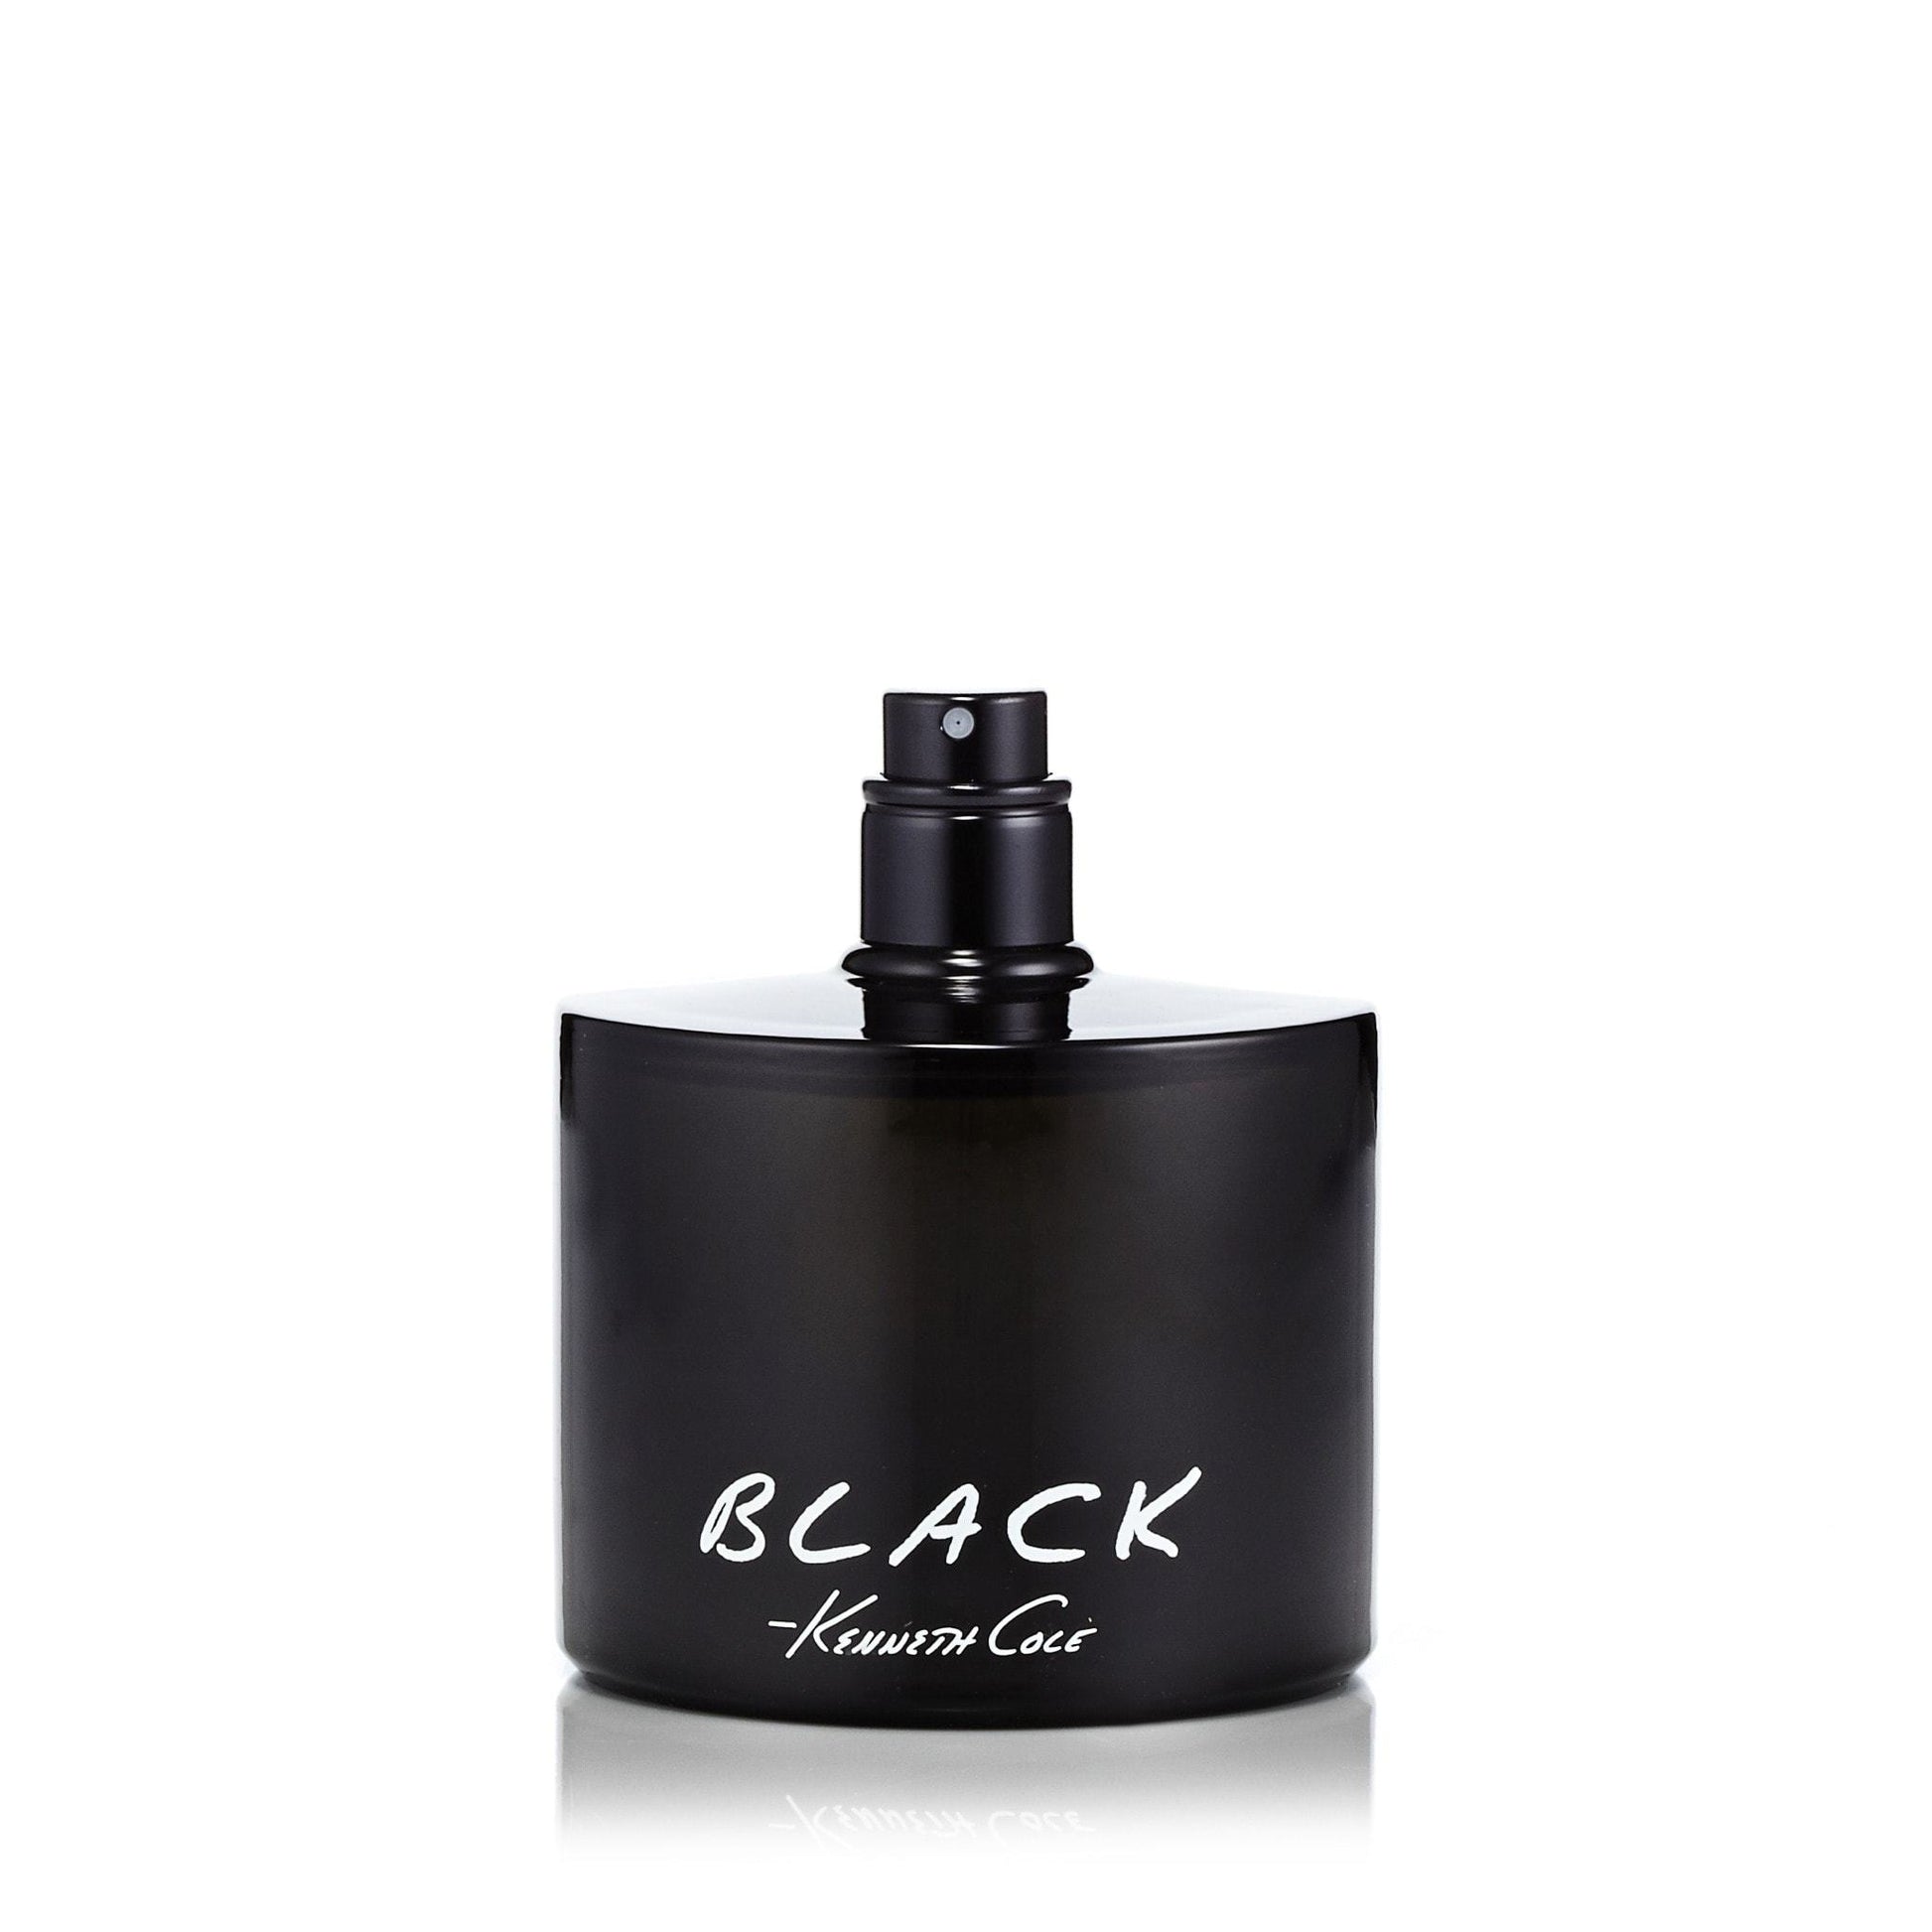 Black Eau de Toilette Spray for Men by Kenneth Cole, Product image 2